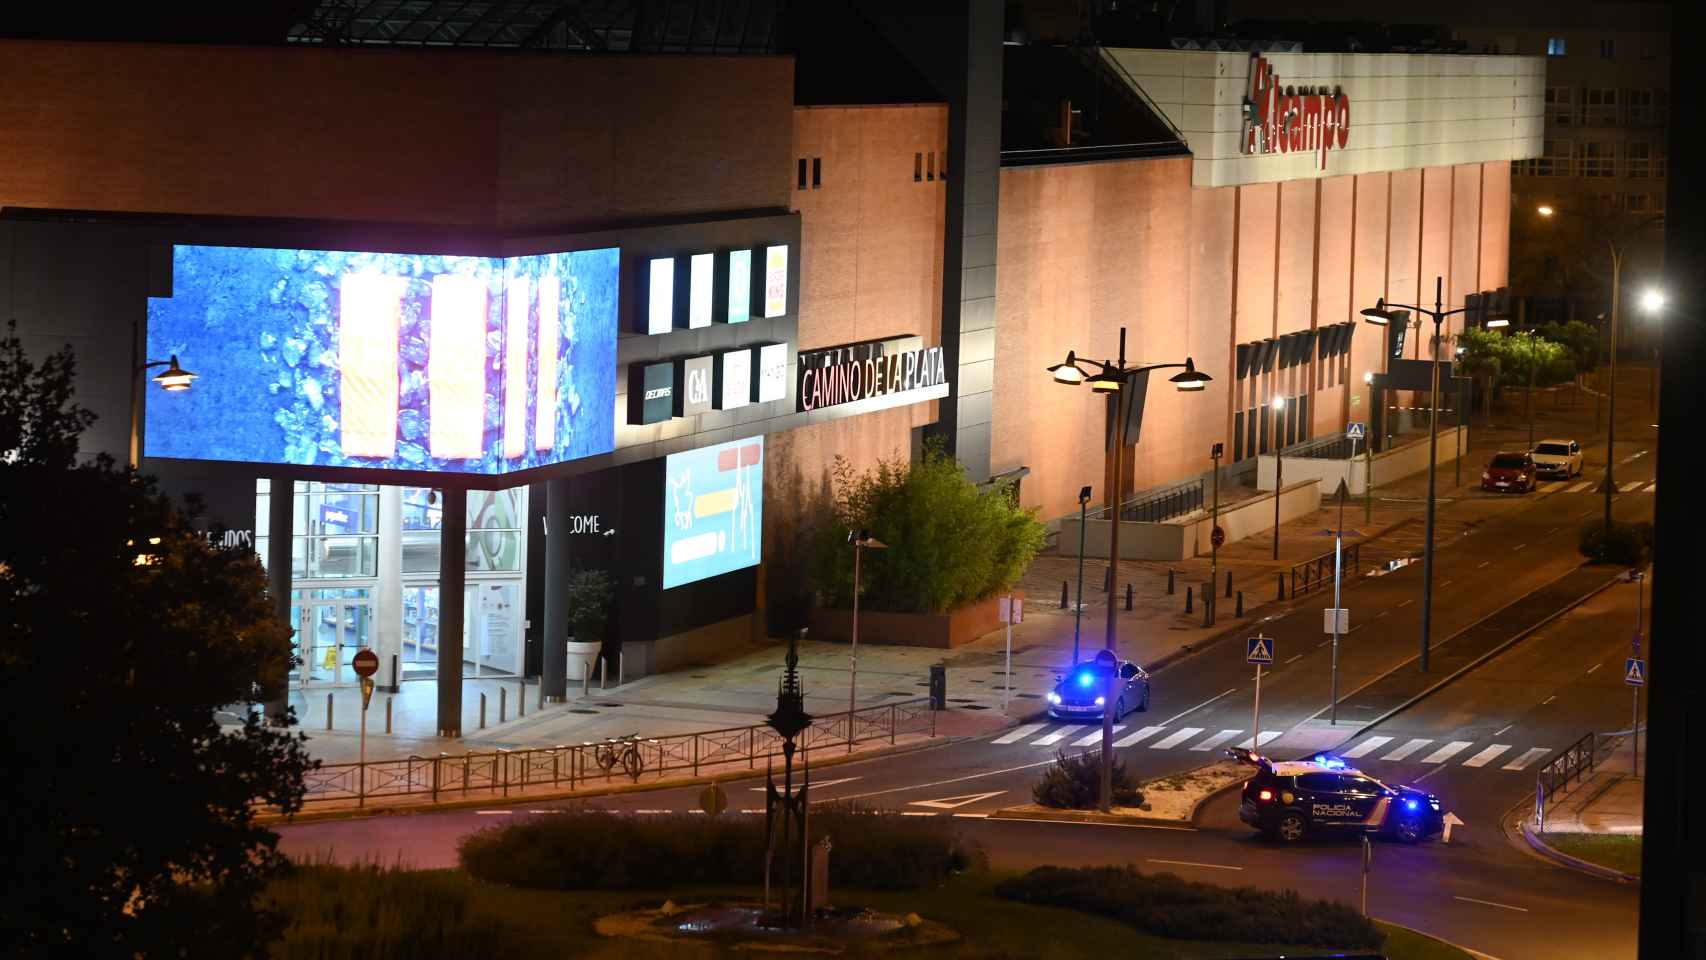 Desalojan el centro comercial Alcampo de Burgos tras encontrar un objeto sospechoso